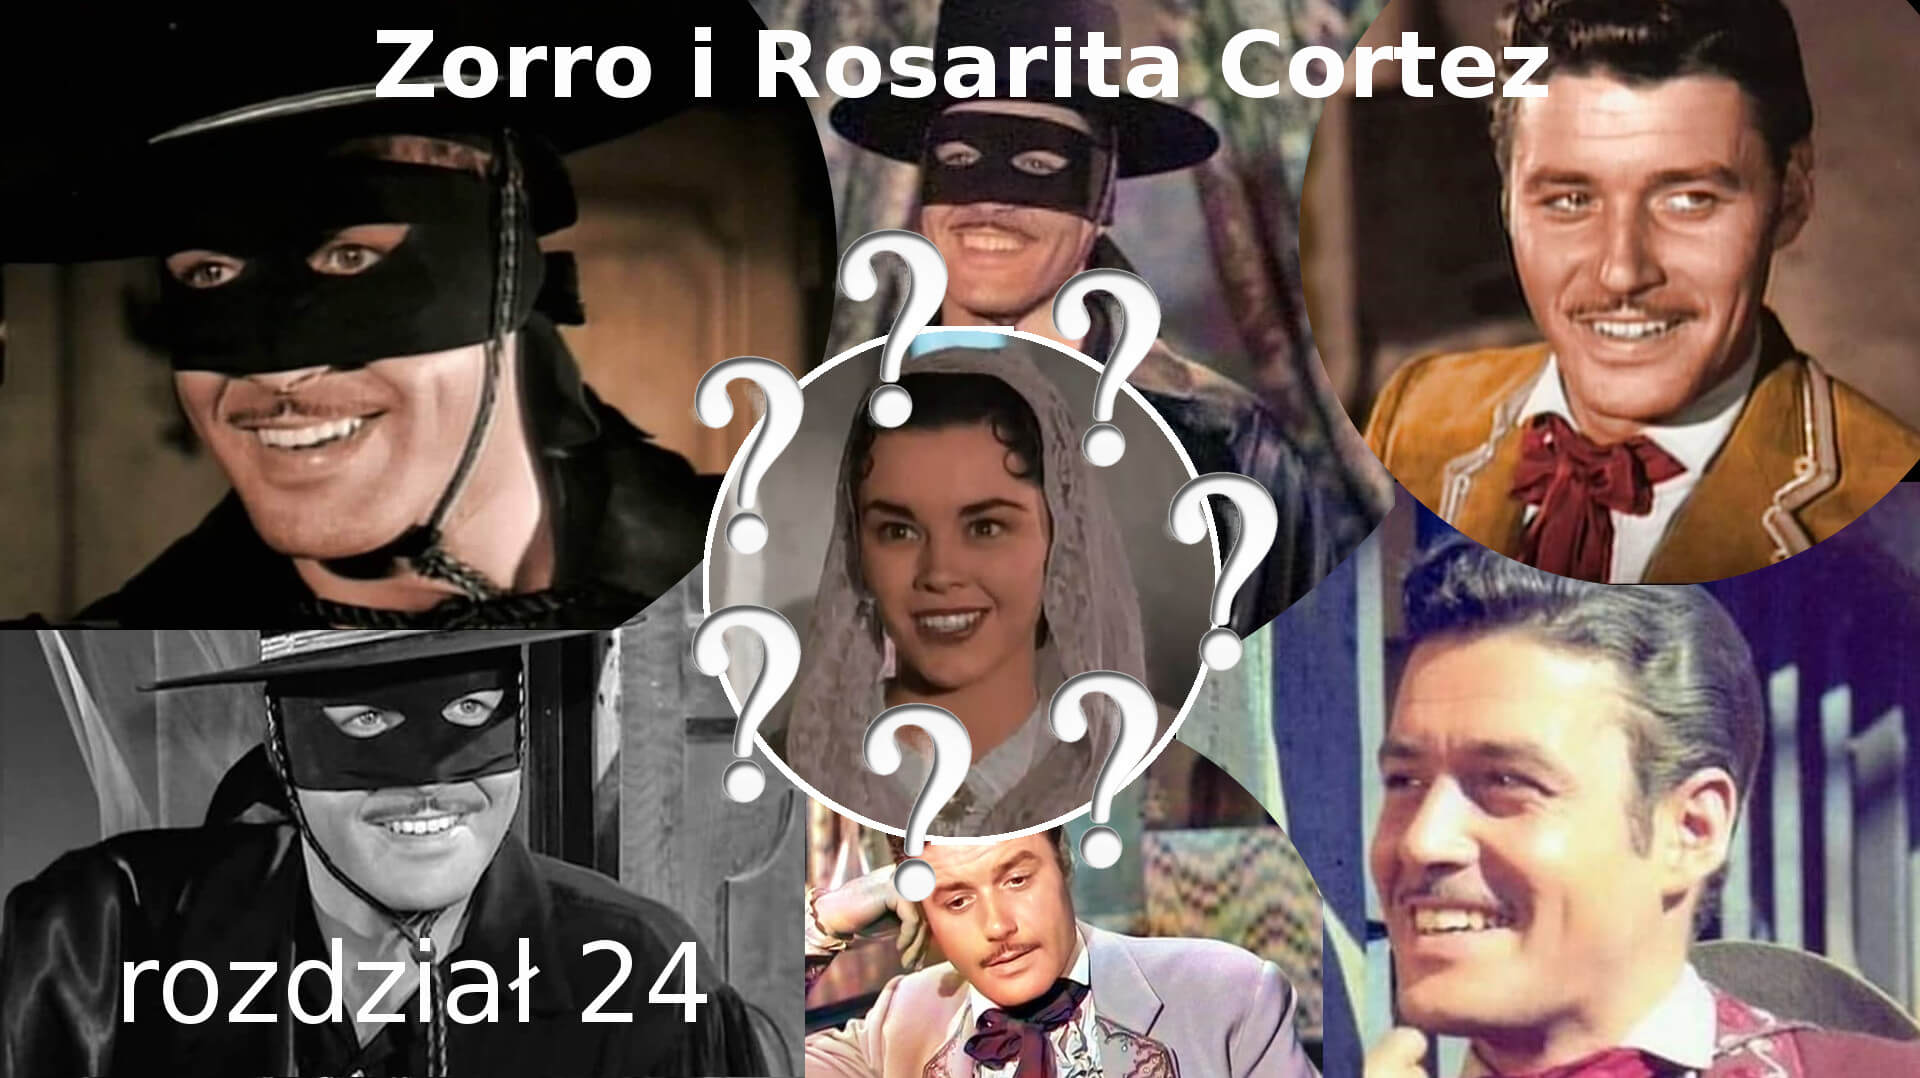 Zorro i Rosarita Cortez rozdział 24 Zorro fanfiction